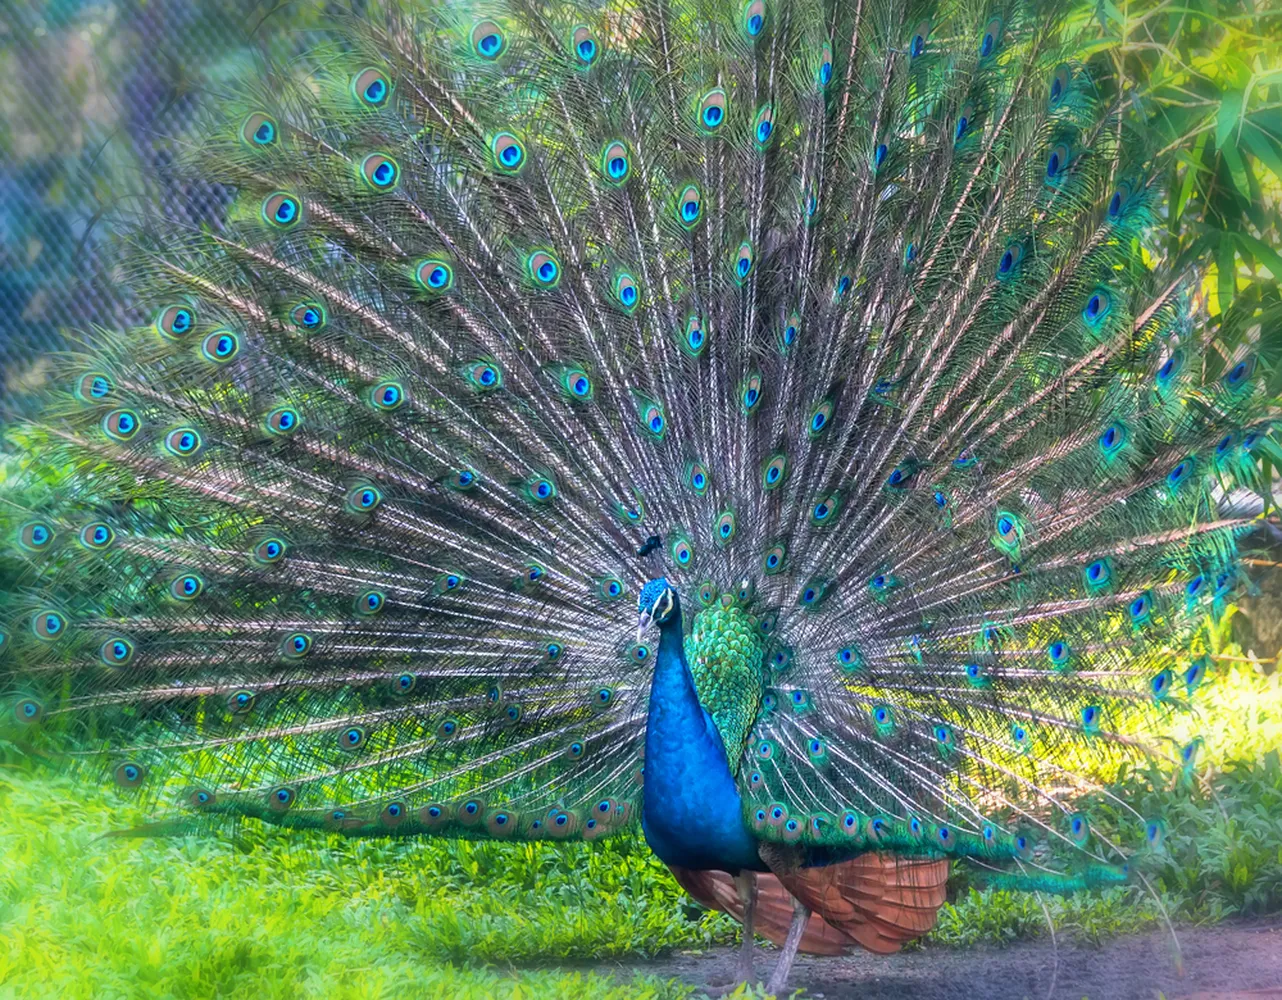 کاغذ دیواری حیوانات طرح پرتره پر طاووس